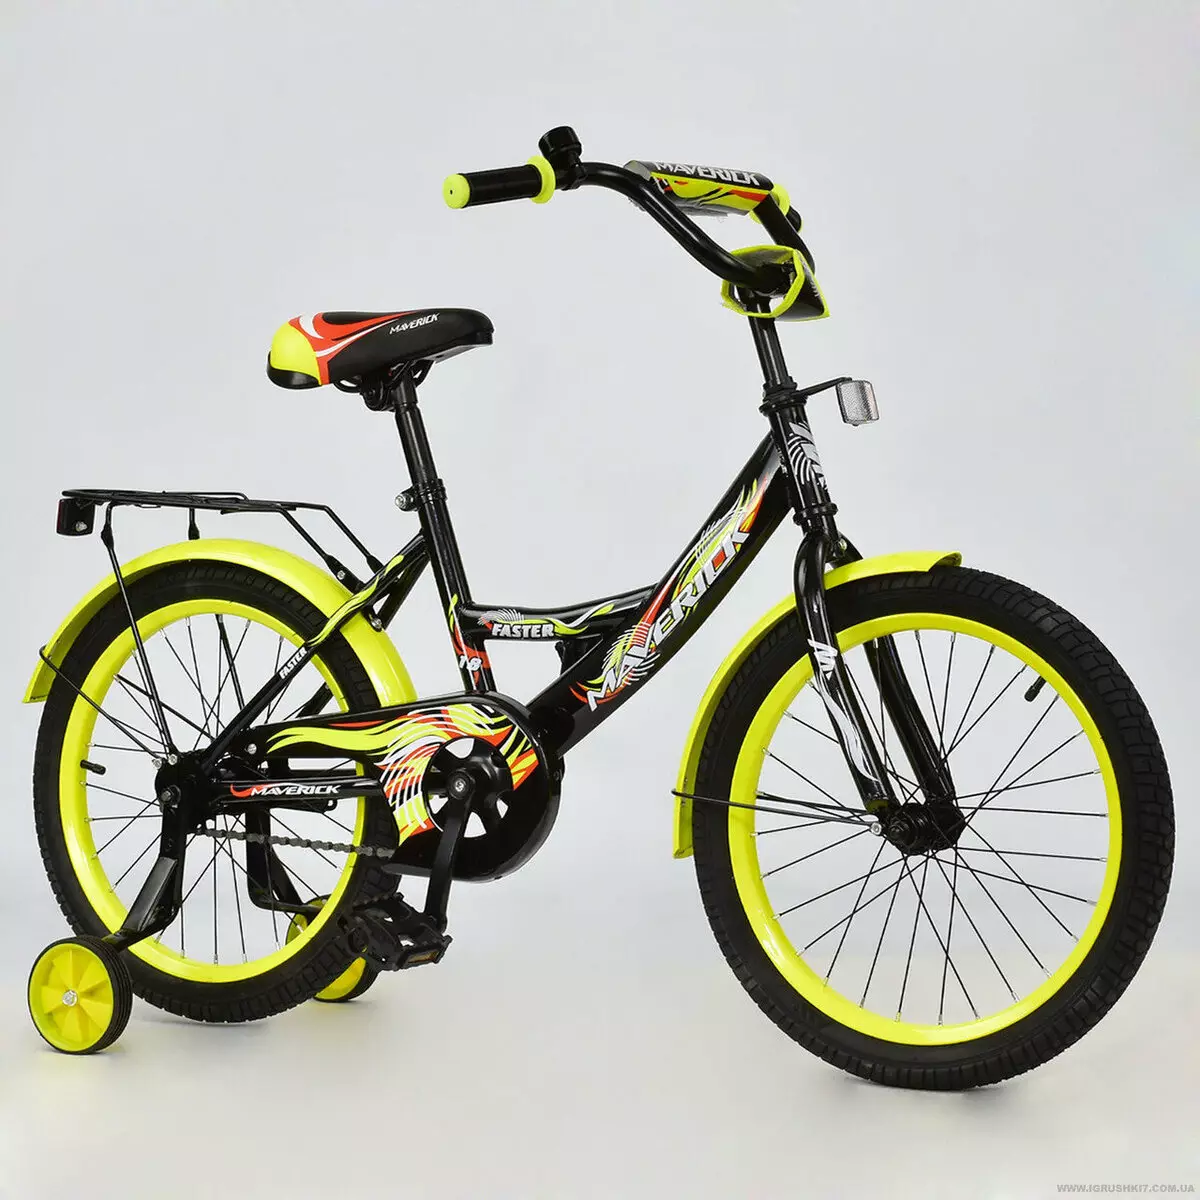 Երեխայի հեծանիվները 8 տարեկան են. Ինչպես ընտրել լավագույն երեխաների հեծանիվը դպրոցականի համար: Ինչպես ընտրել անիվների չափը: 8554_9